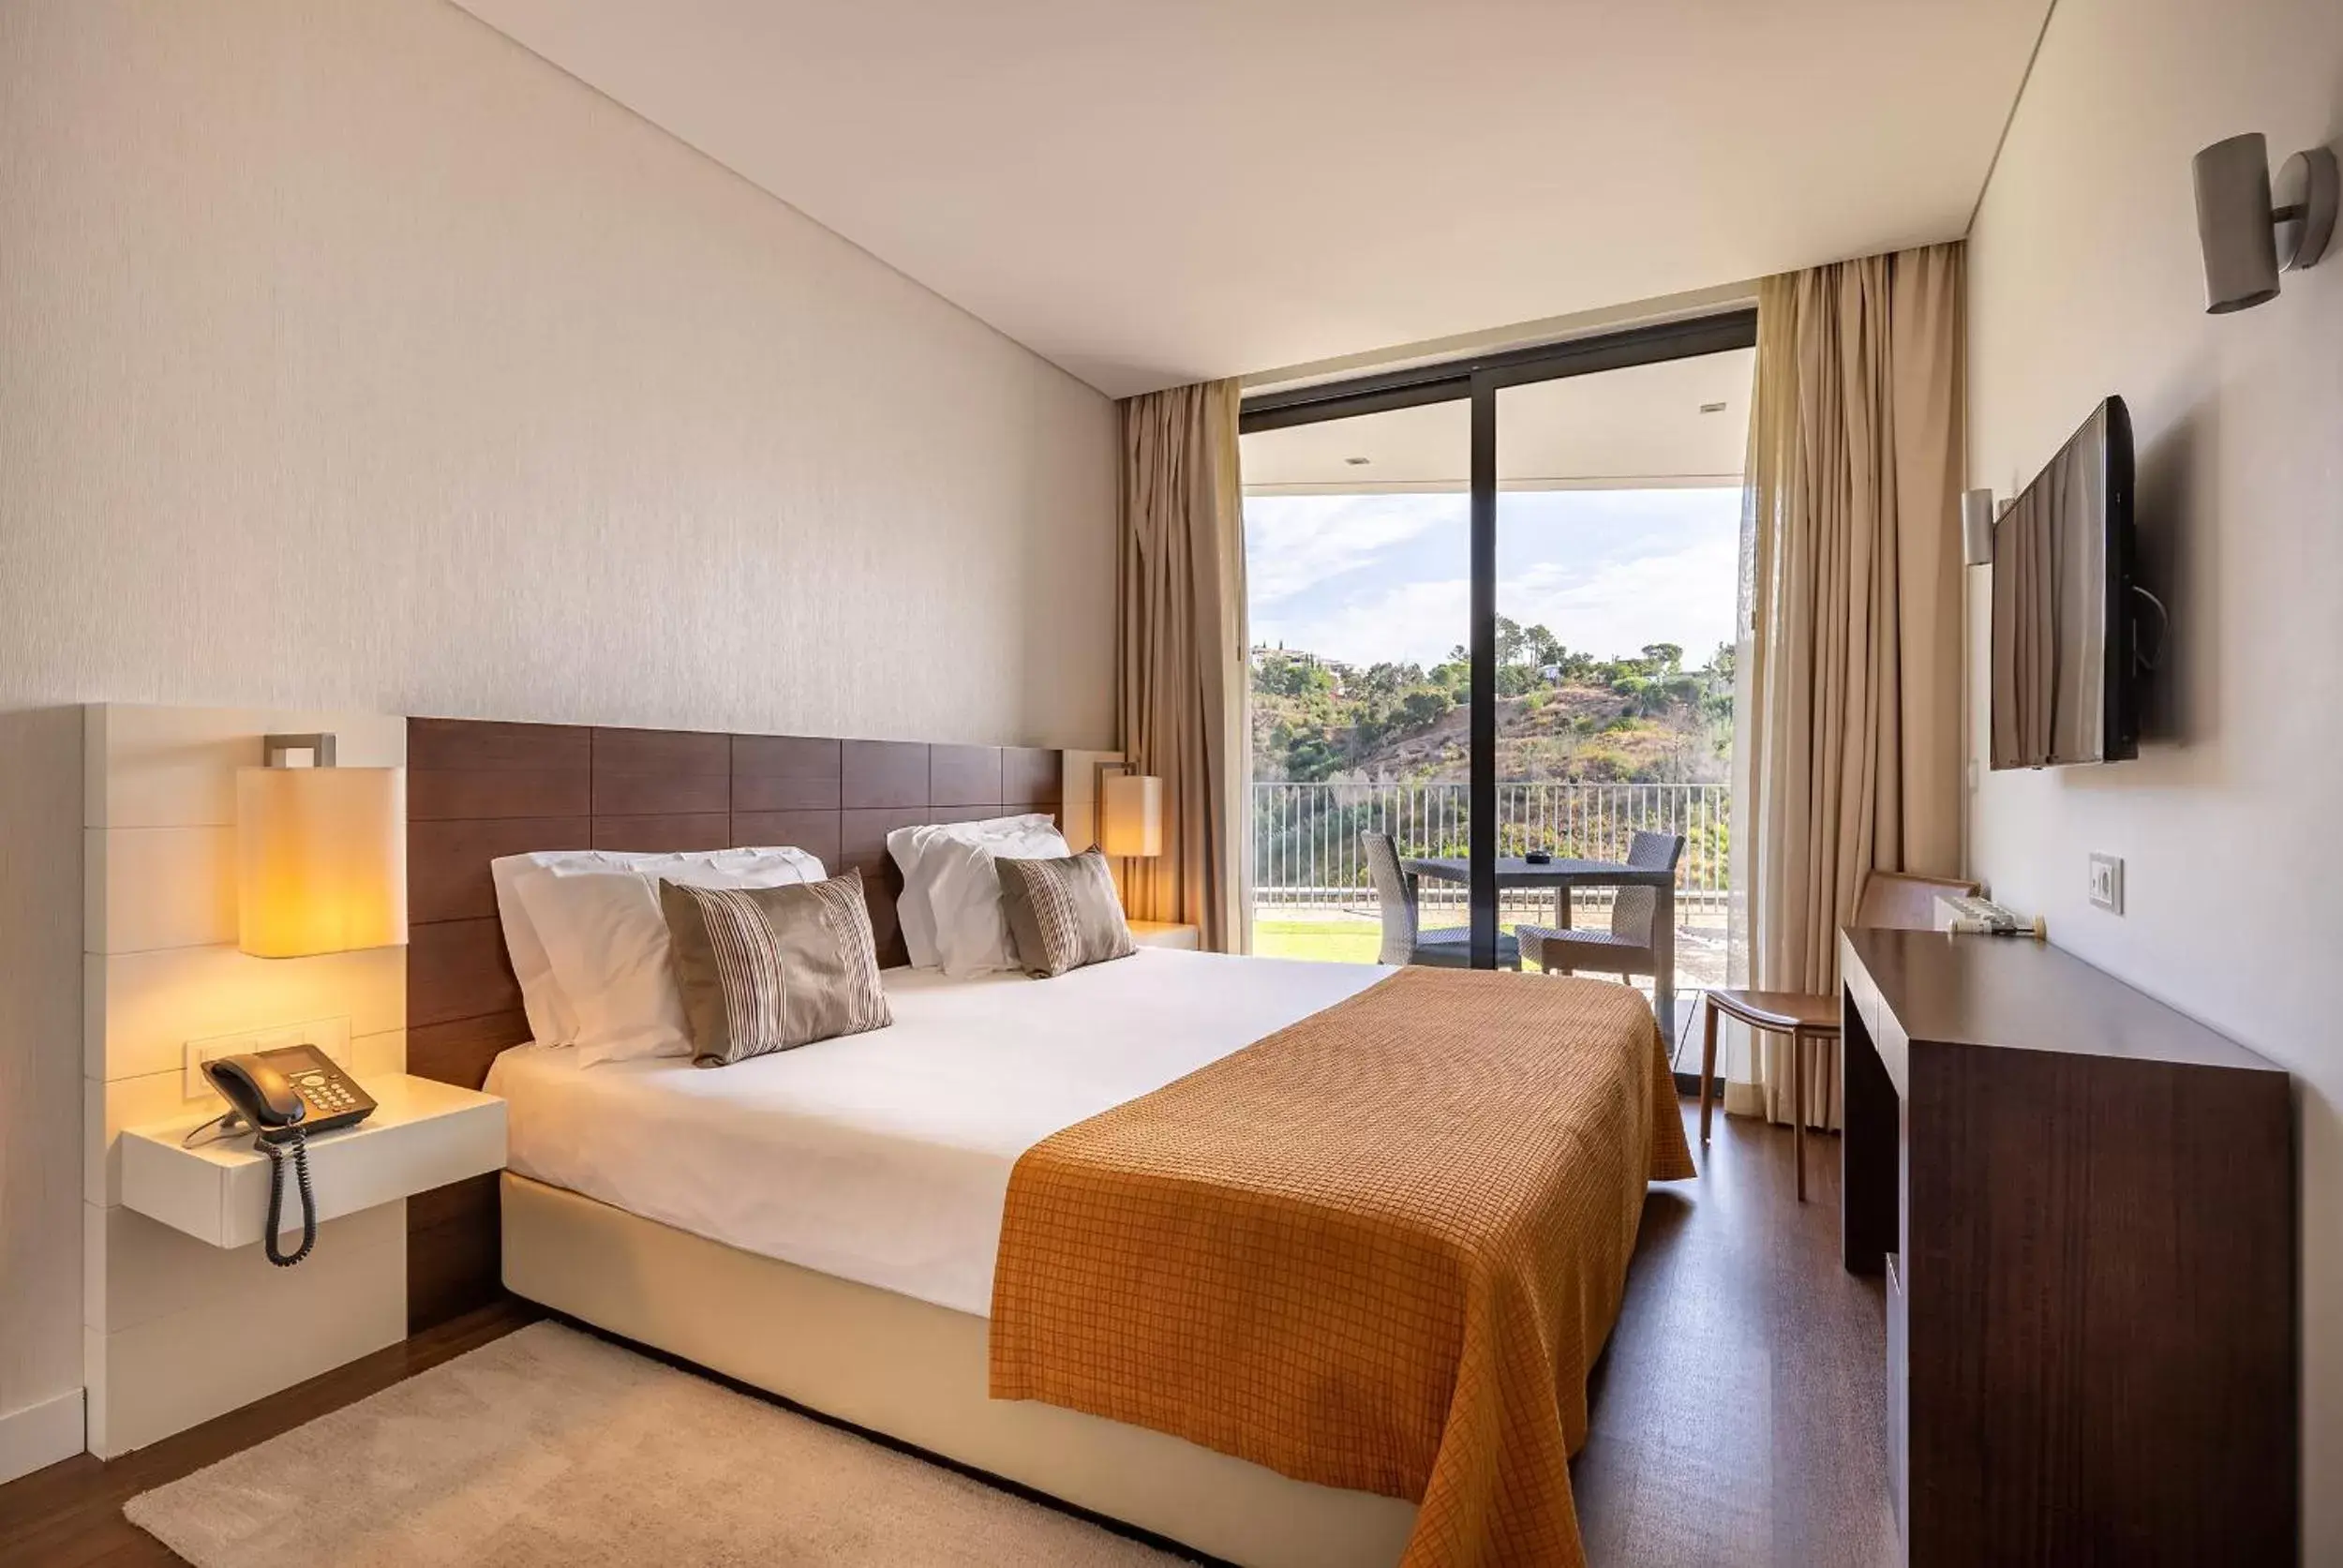 Bedroom in Monchique Resort - Activities Included